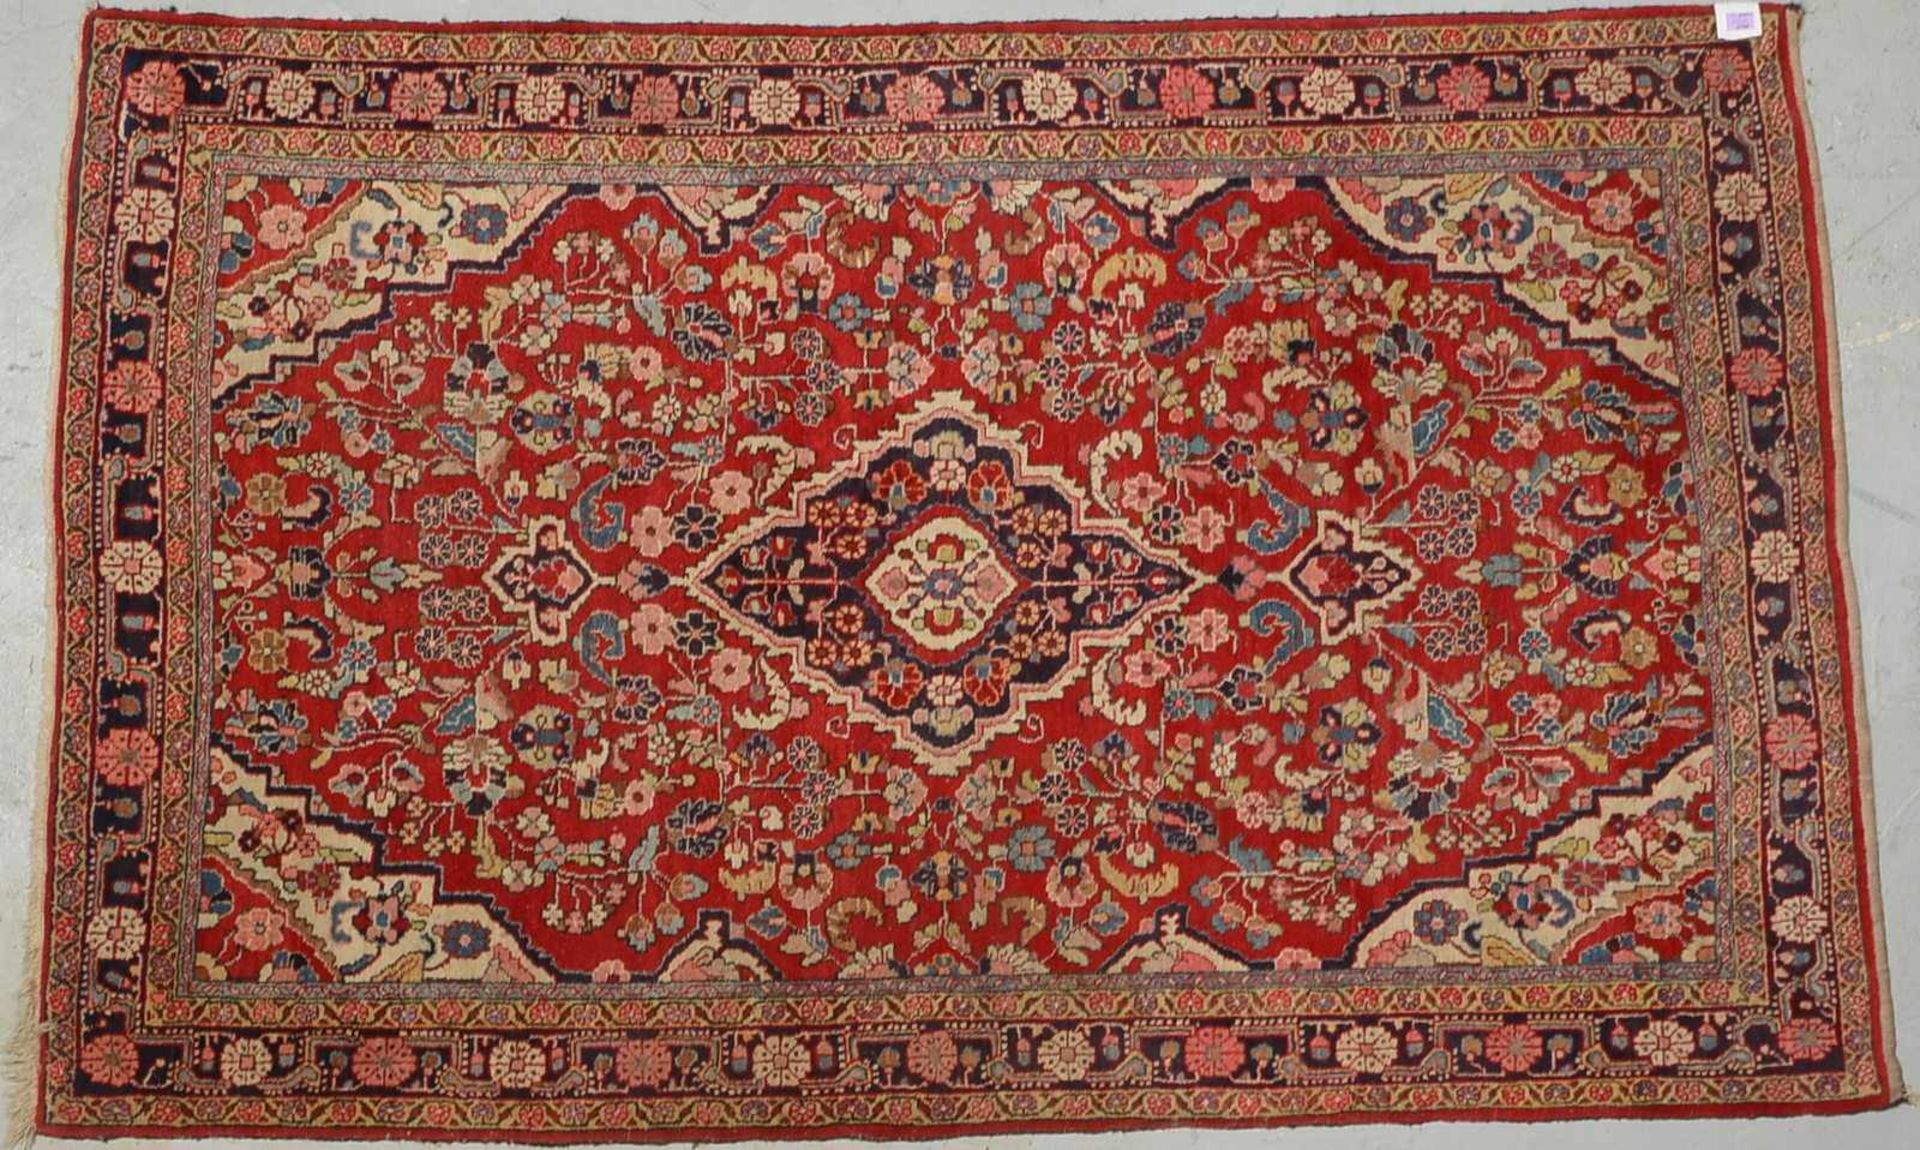 Djosan-Orientteppich, feste Knüpfung, ringsum komplett, Flor in gutem Zustand; Maße 203 x 130 cm